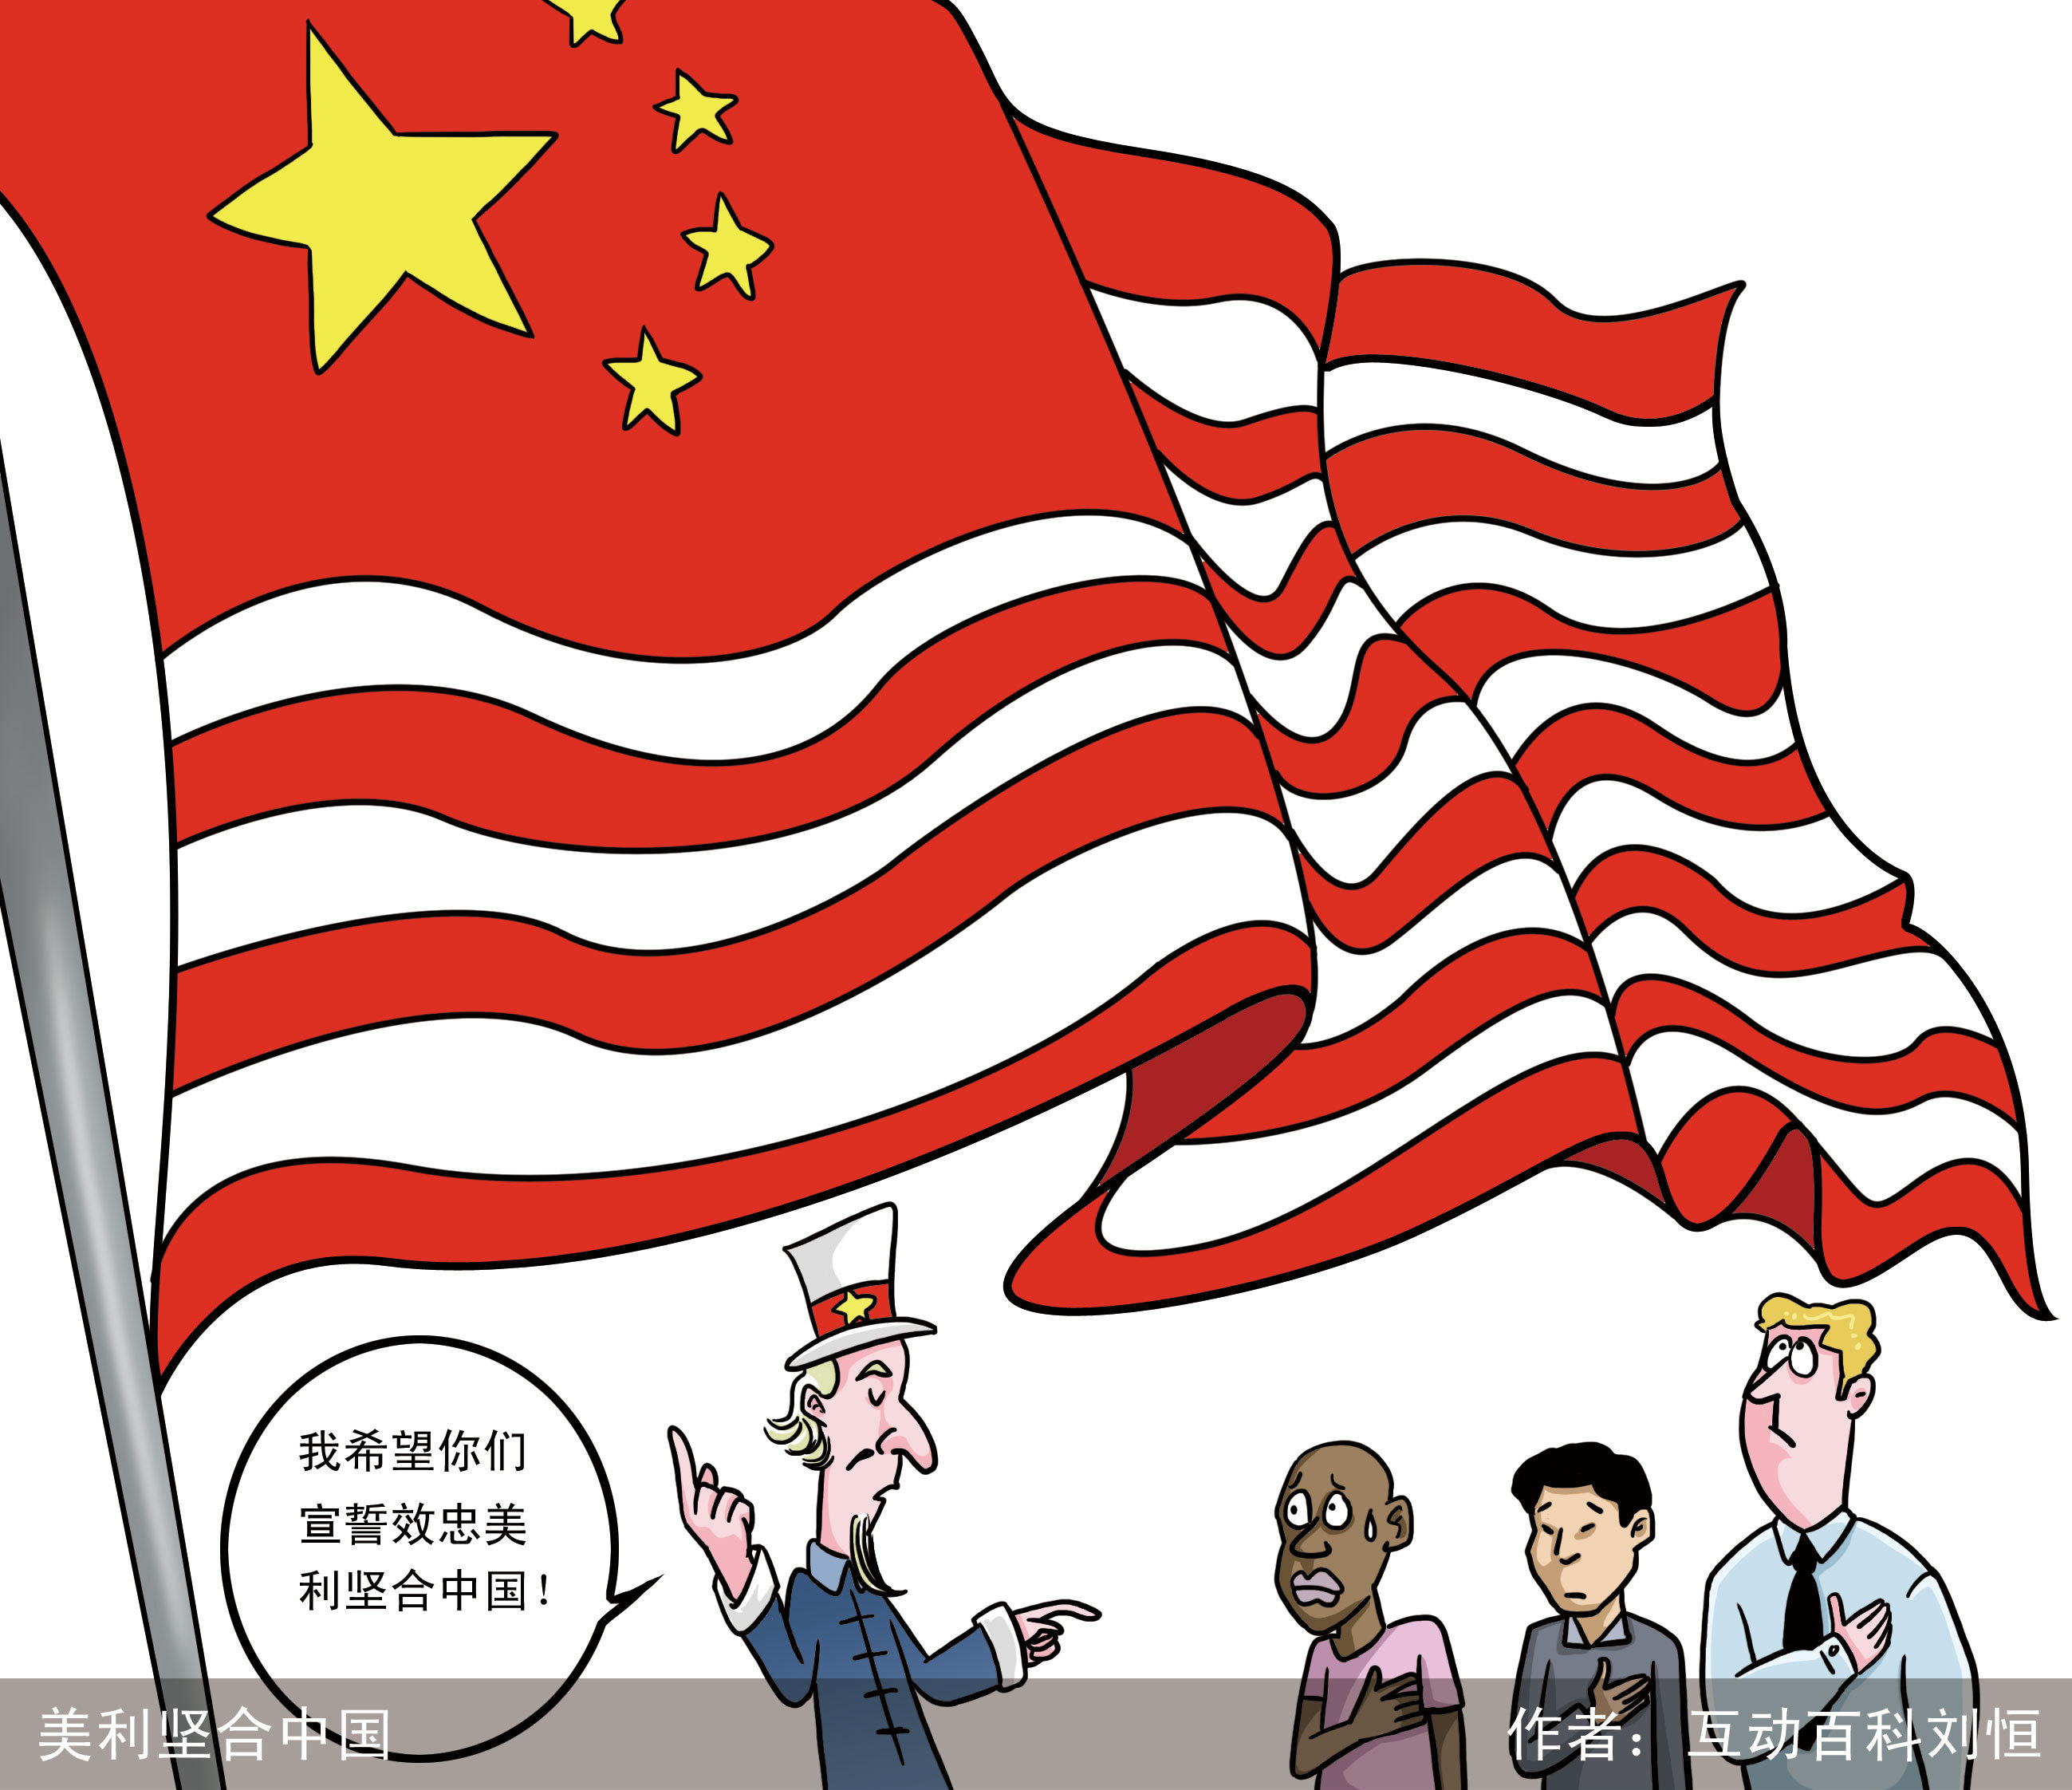 美研究人员：中国对美军舰机骚扰采取强硬立场，挑衅中国失去自由-包明说-包明说-哔哩哔哩视频